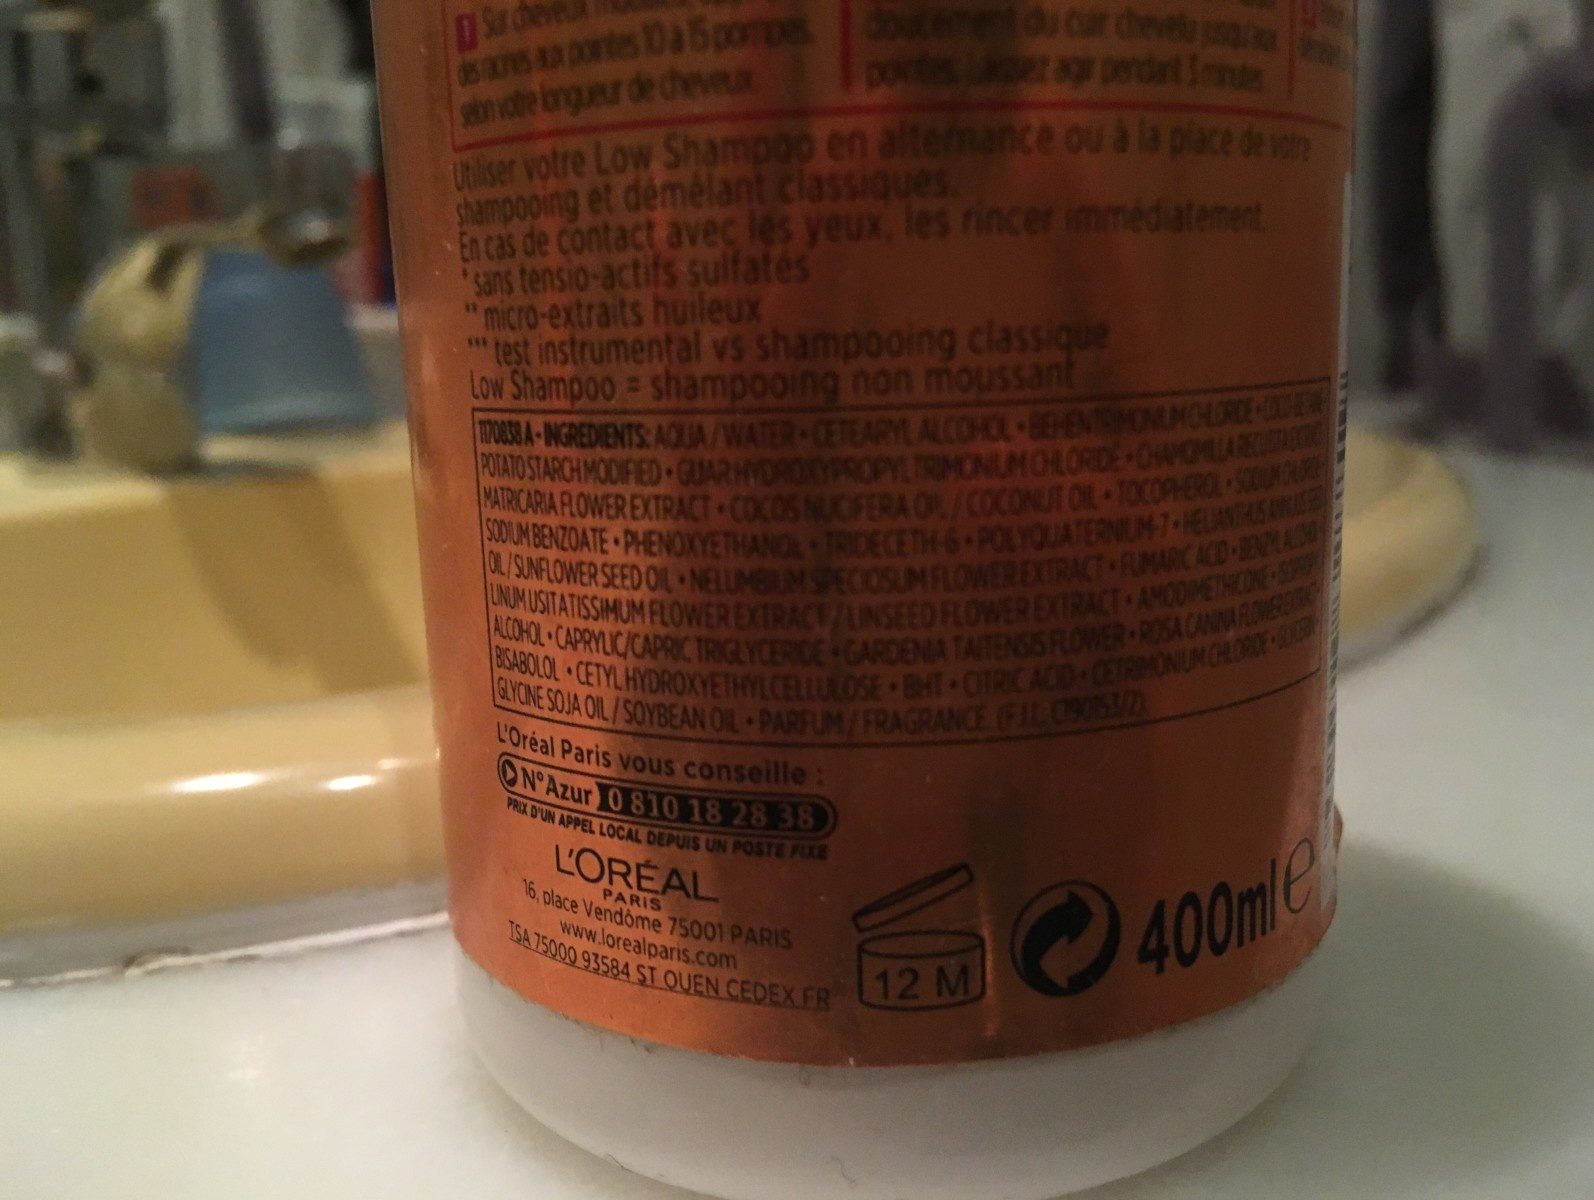 Low shampoo huile extraordinaire - רכיבים - fr